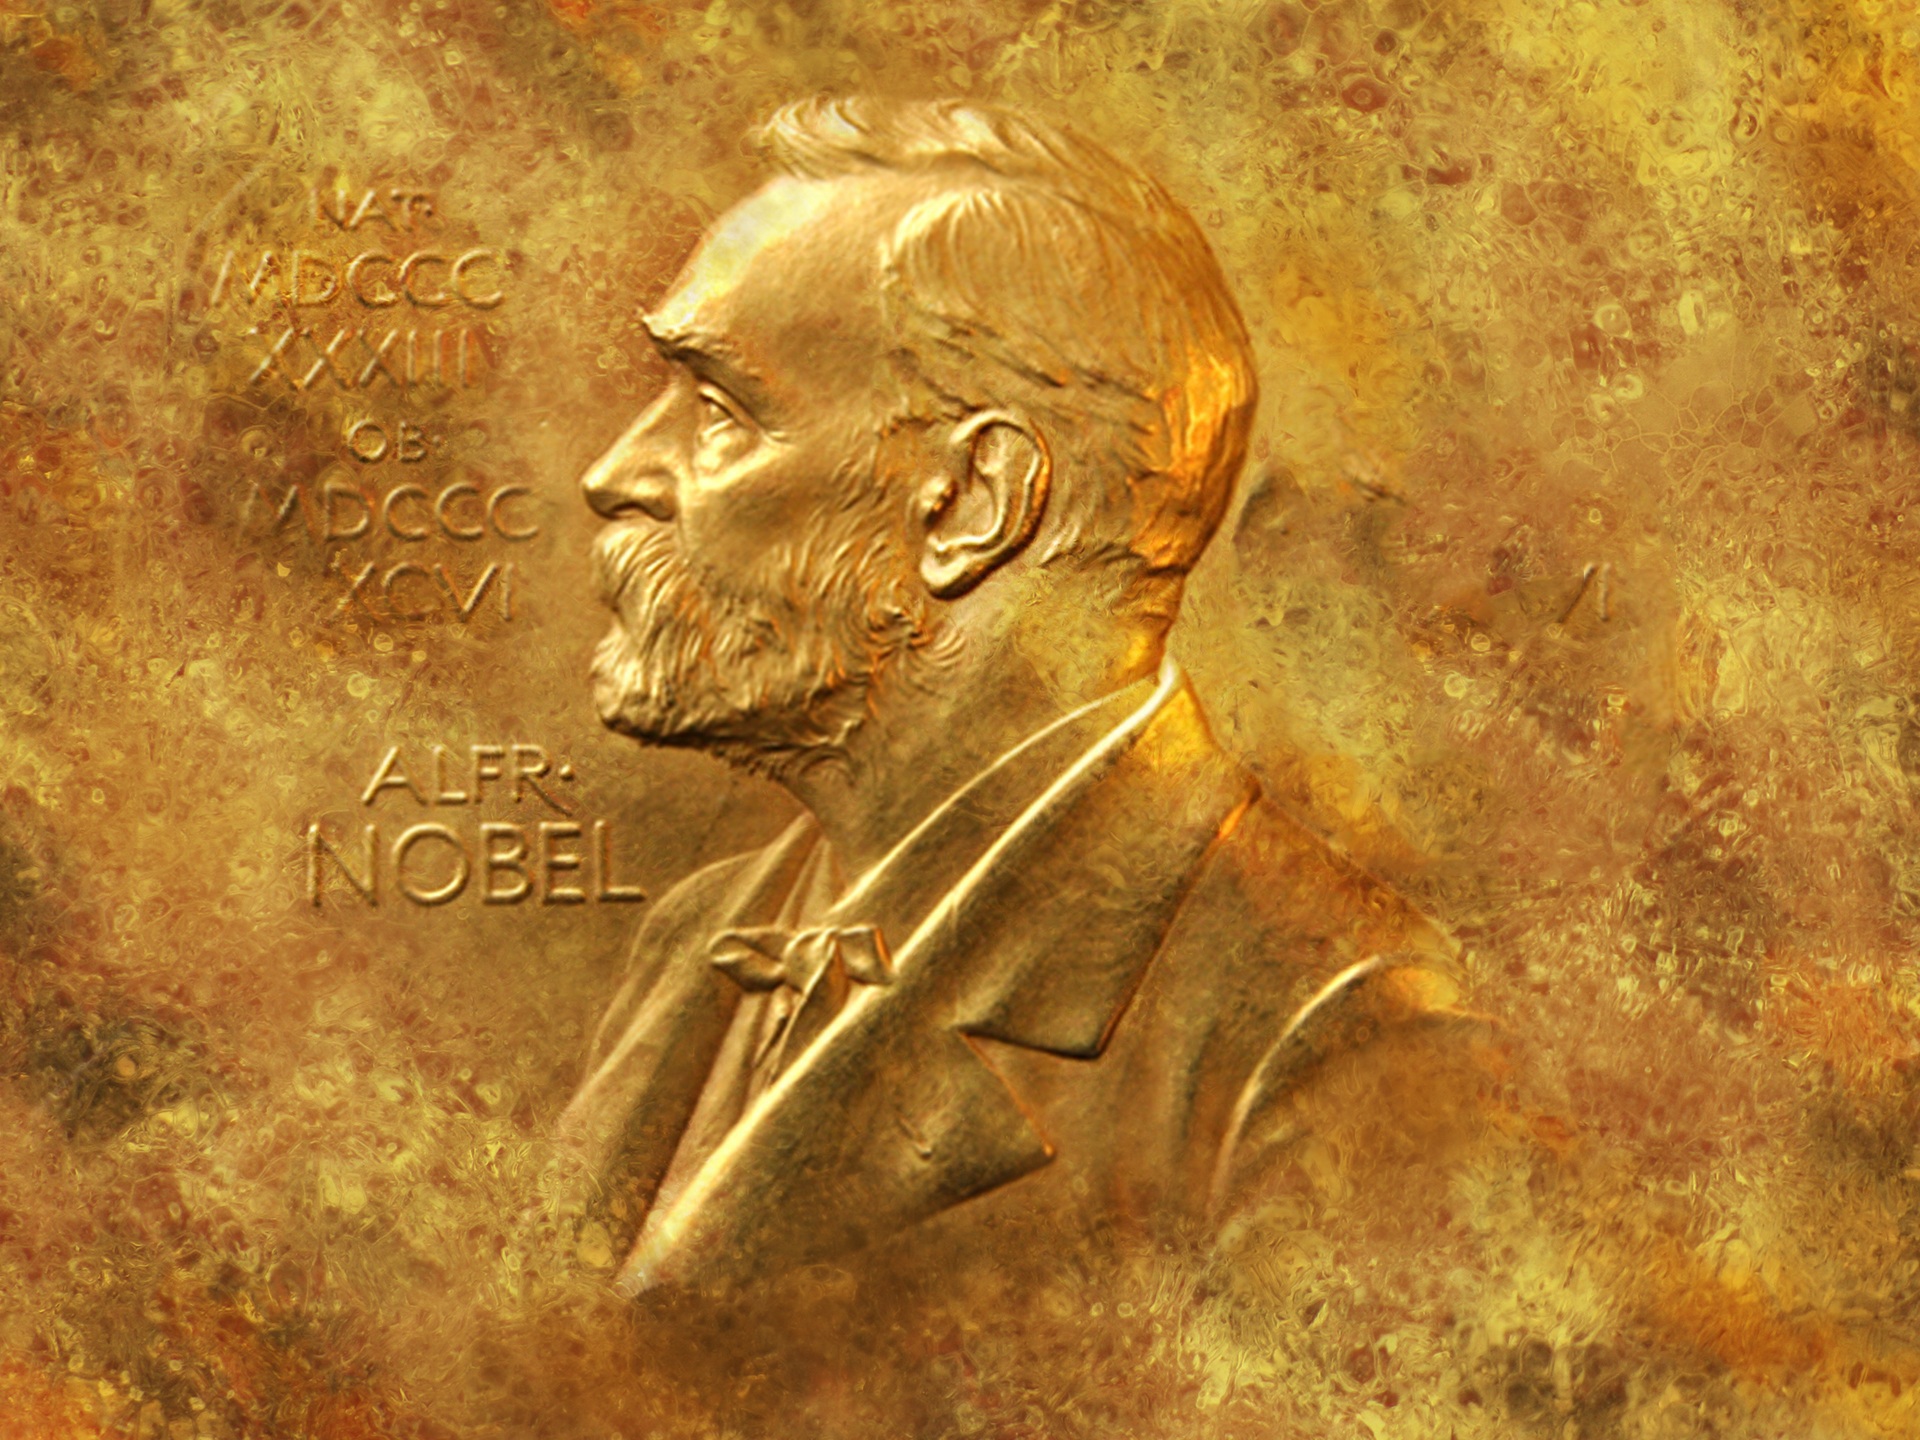 Vi på Lowell gratulerar årets nobelpristagare i ekonomi